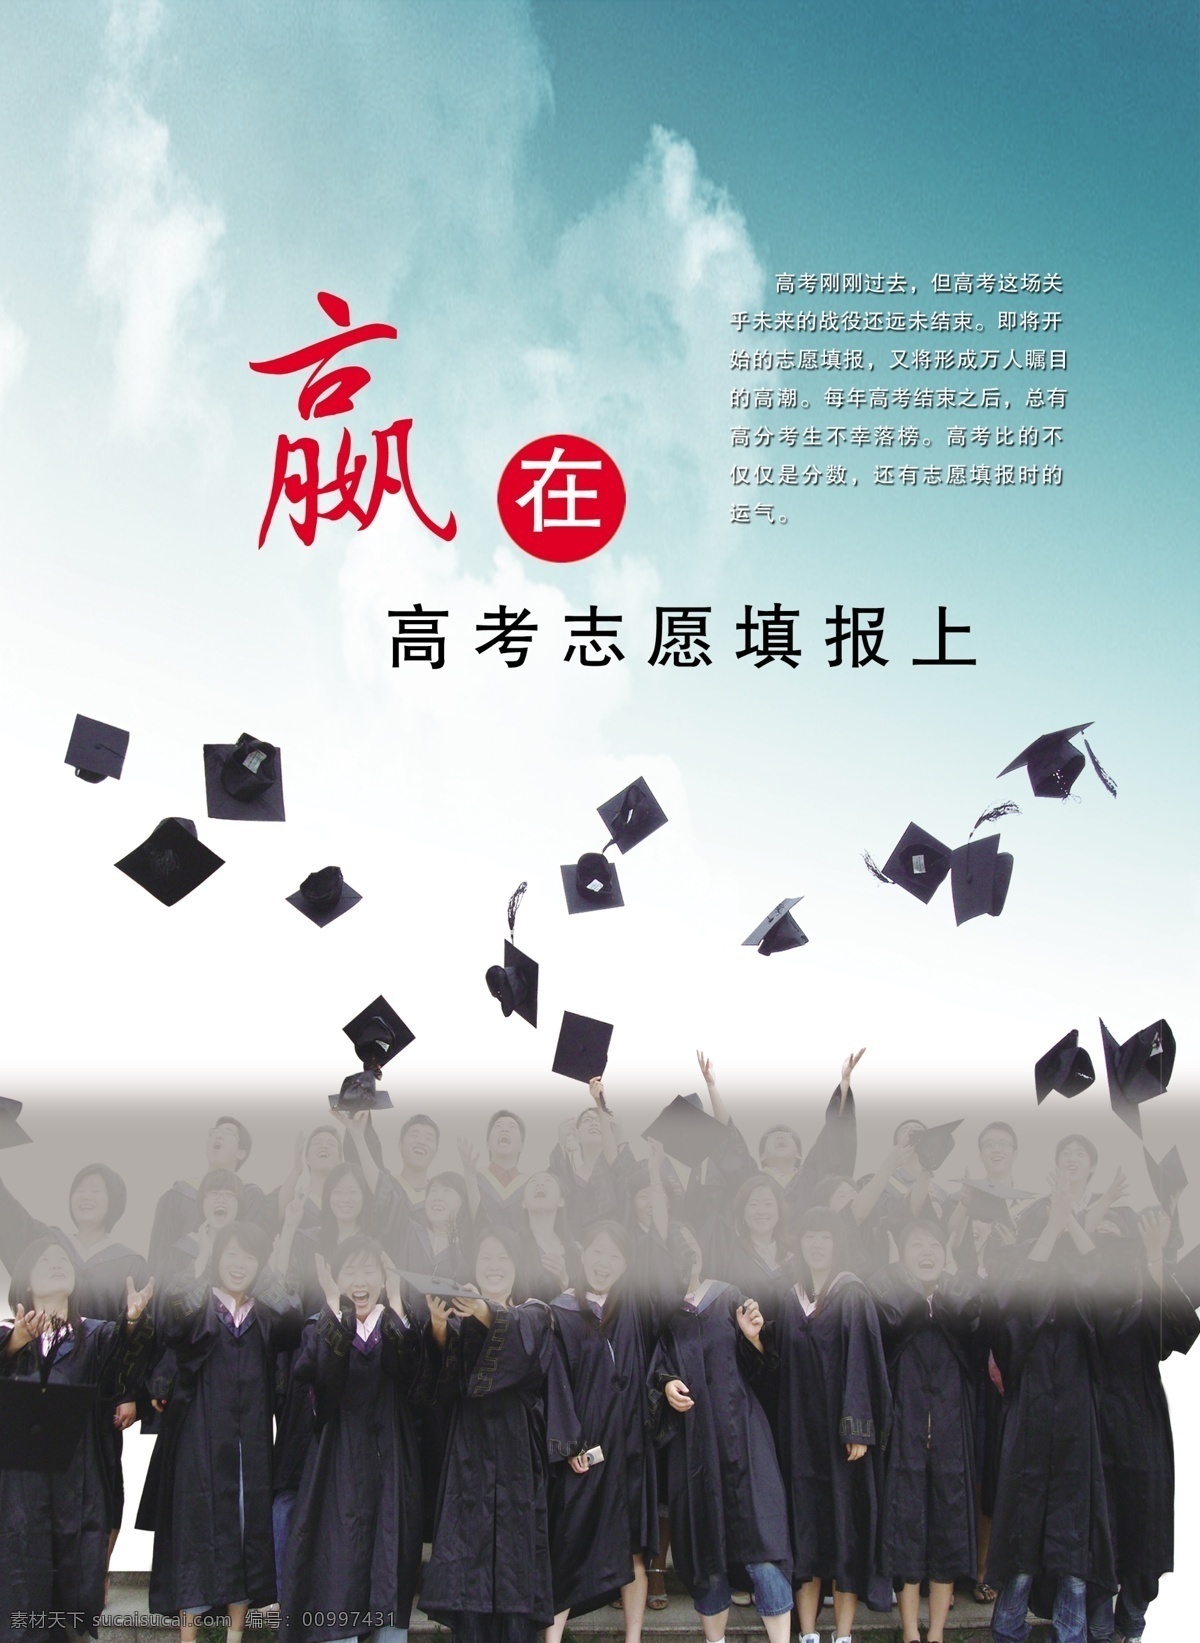 赢 高考 志愿填报 上 大学生 嬴 扔帽子的学生 帽子 毕业照 天空 广告设计模板 源文件